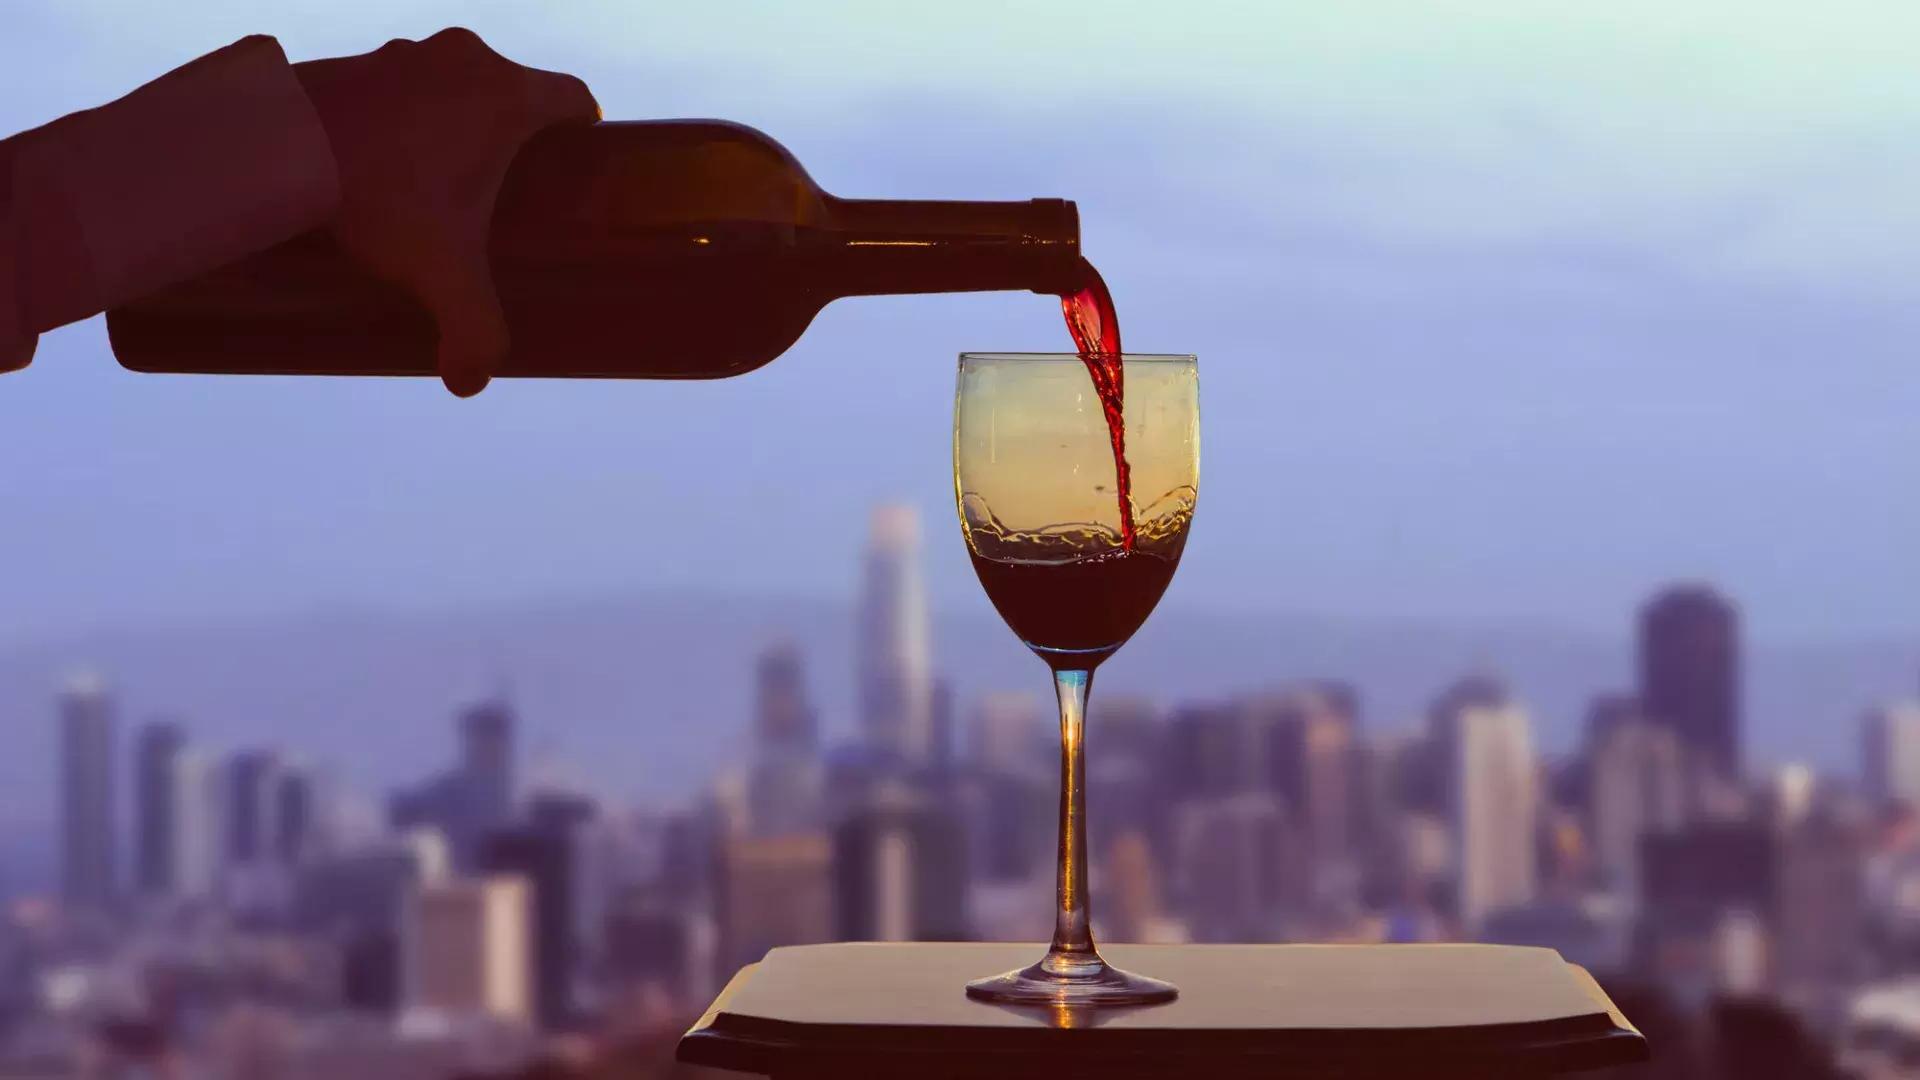 Se sirve una copa de vino tinto, con el horizonte de 贝博体彩app visible desde la ventana.